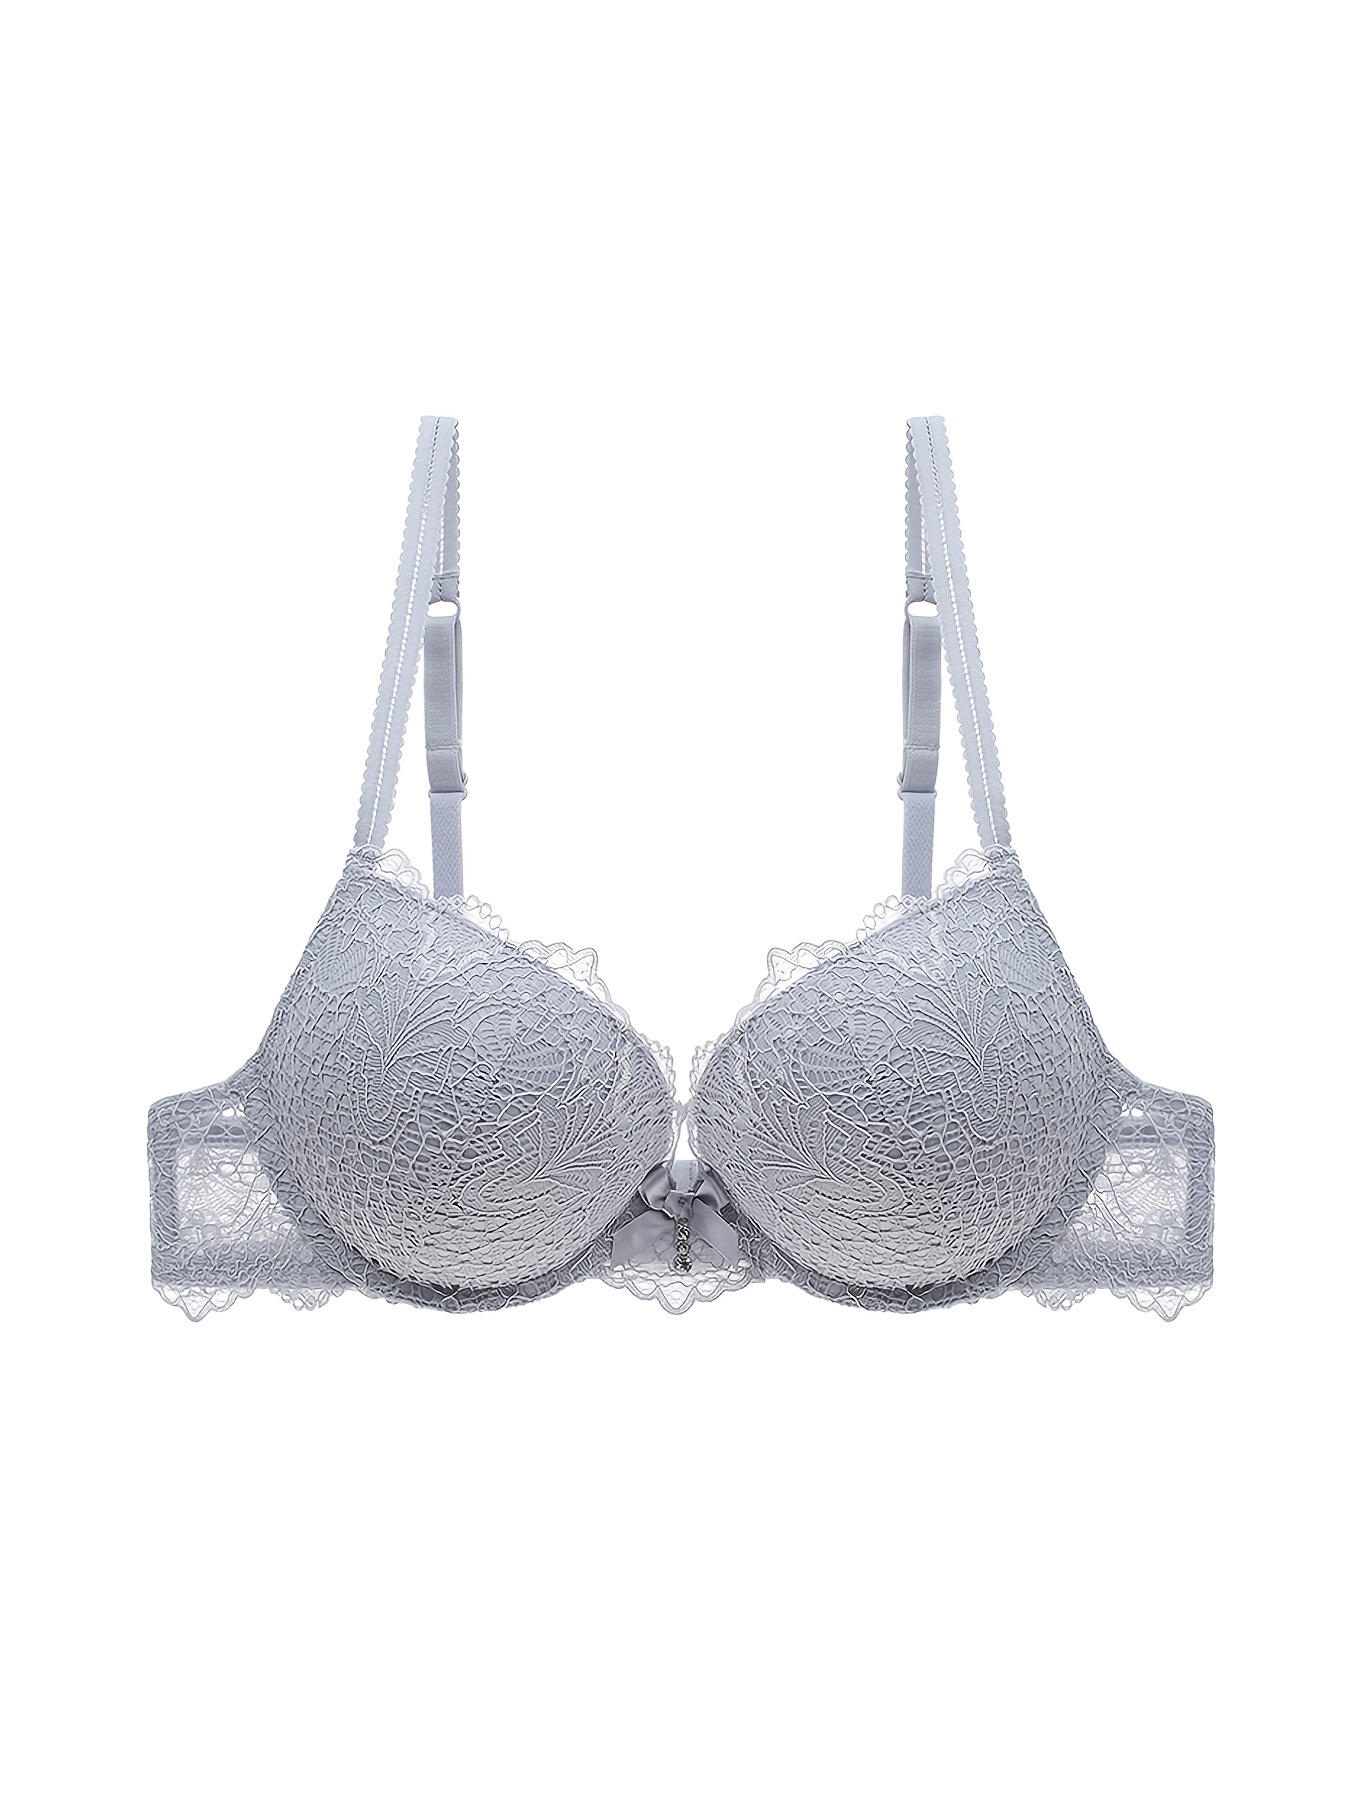 Victoria's Secret dream angel floral lace push up bra white size 36D